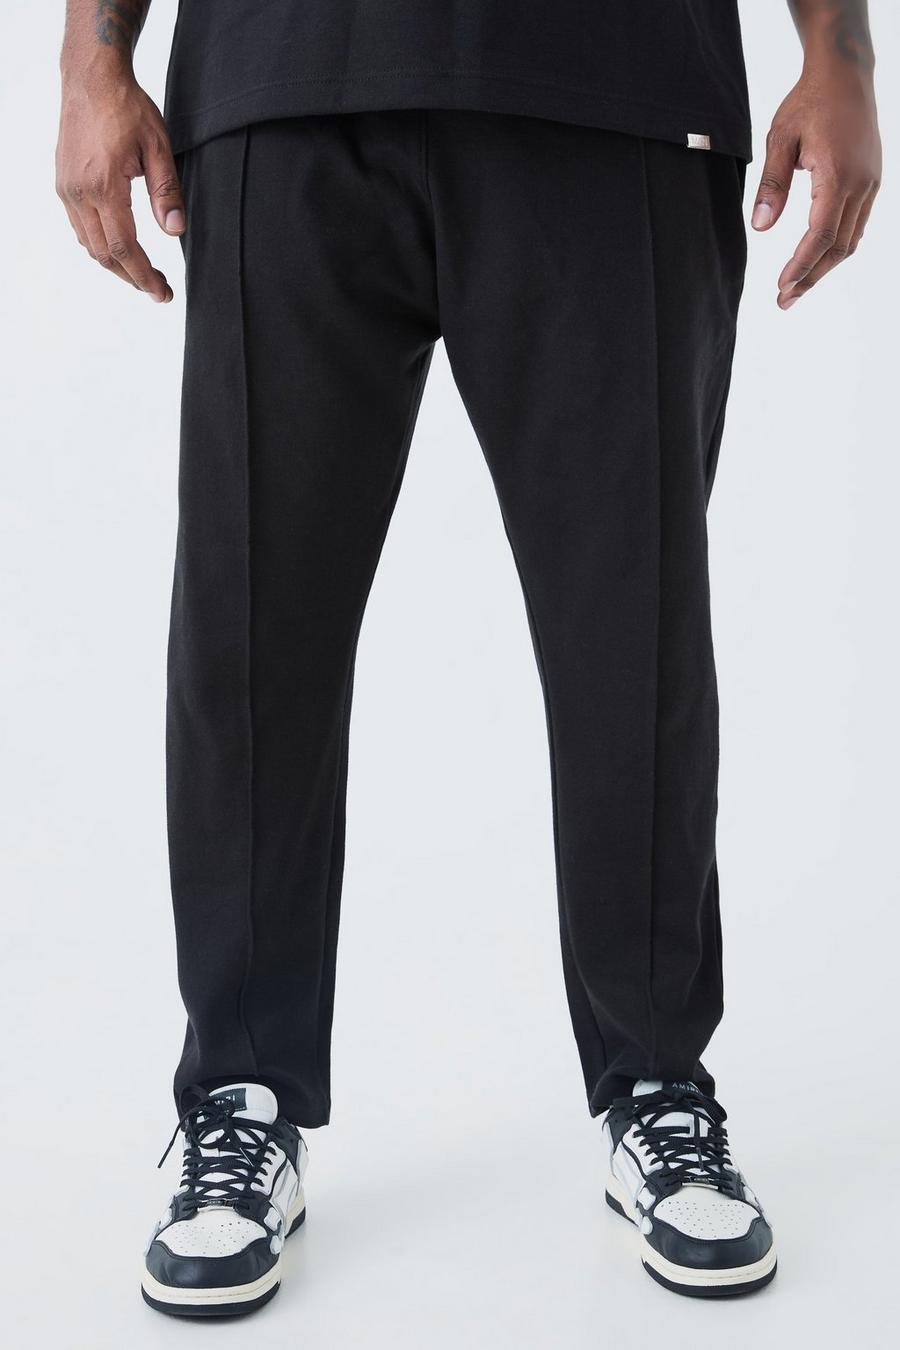 Pantalón deportivo Plus ajustado con alforza, Black